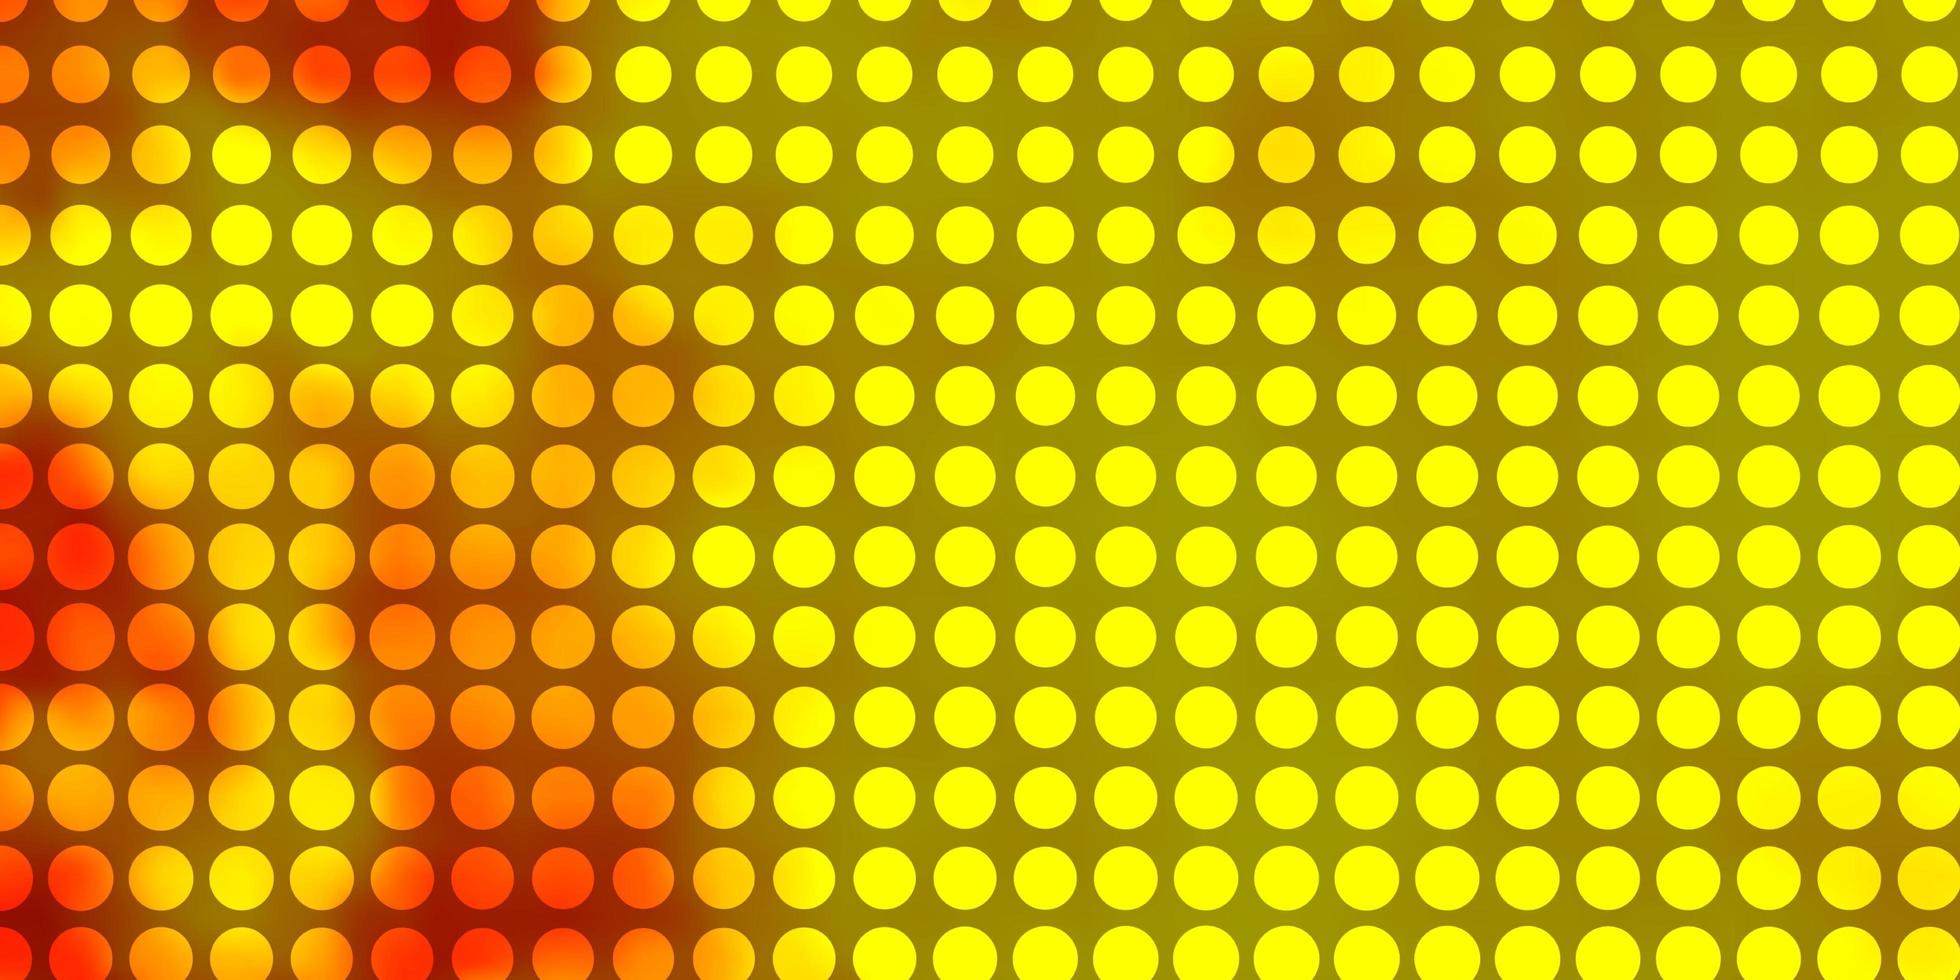 ljus gul vektor konsistens med cirklar.